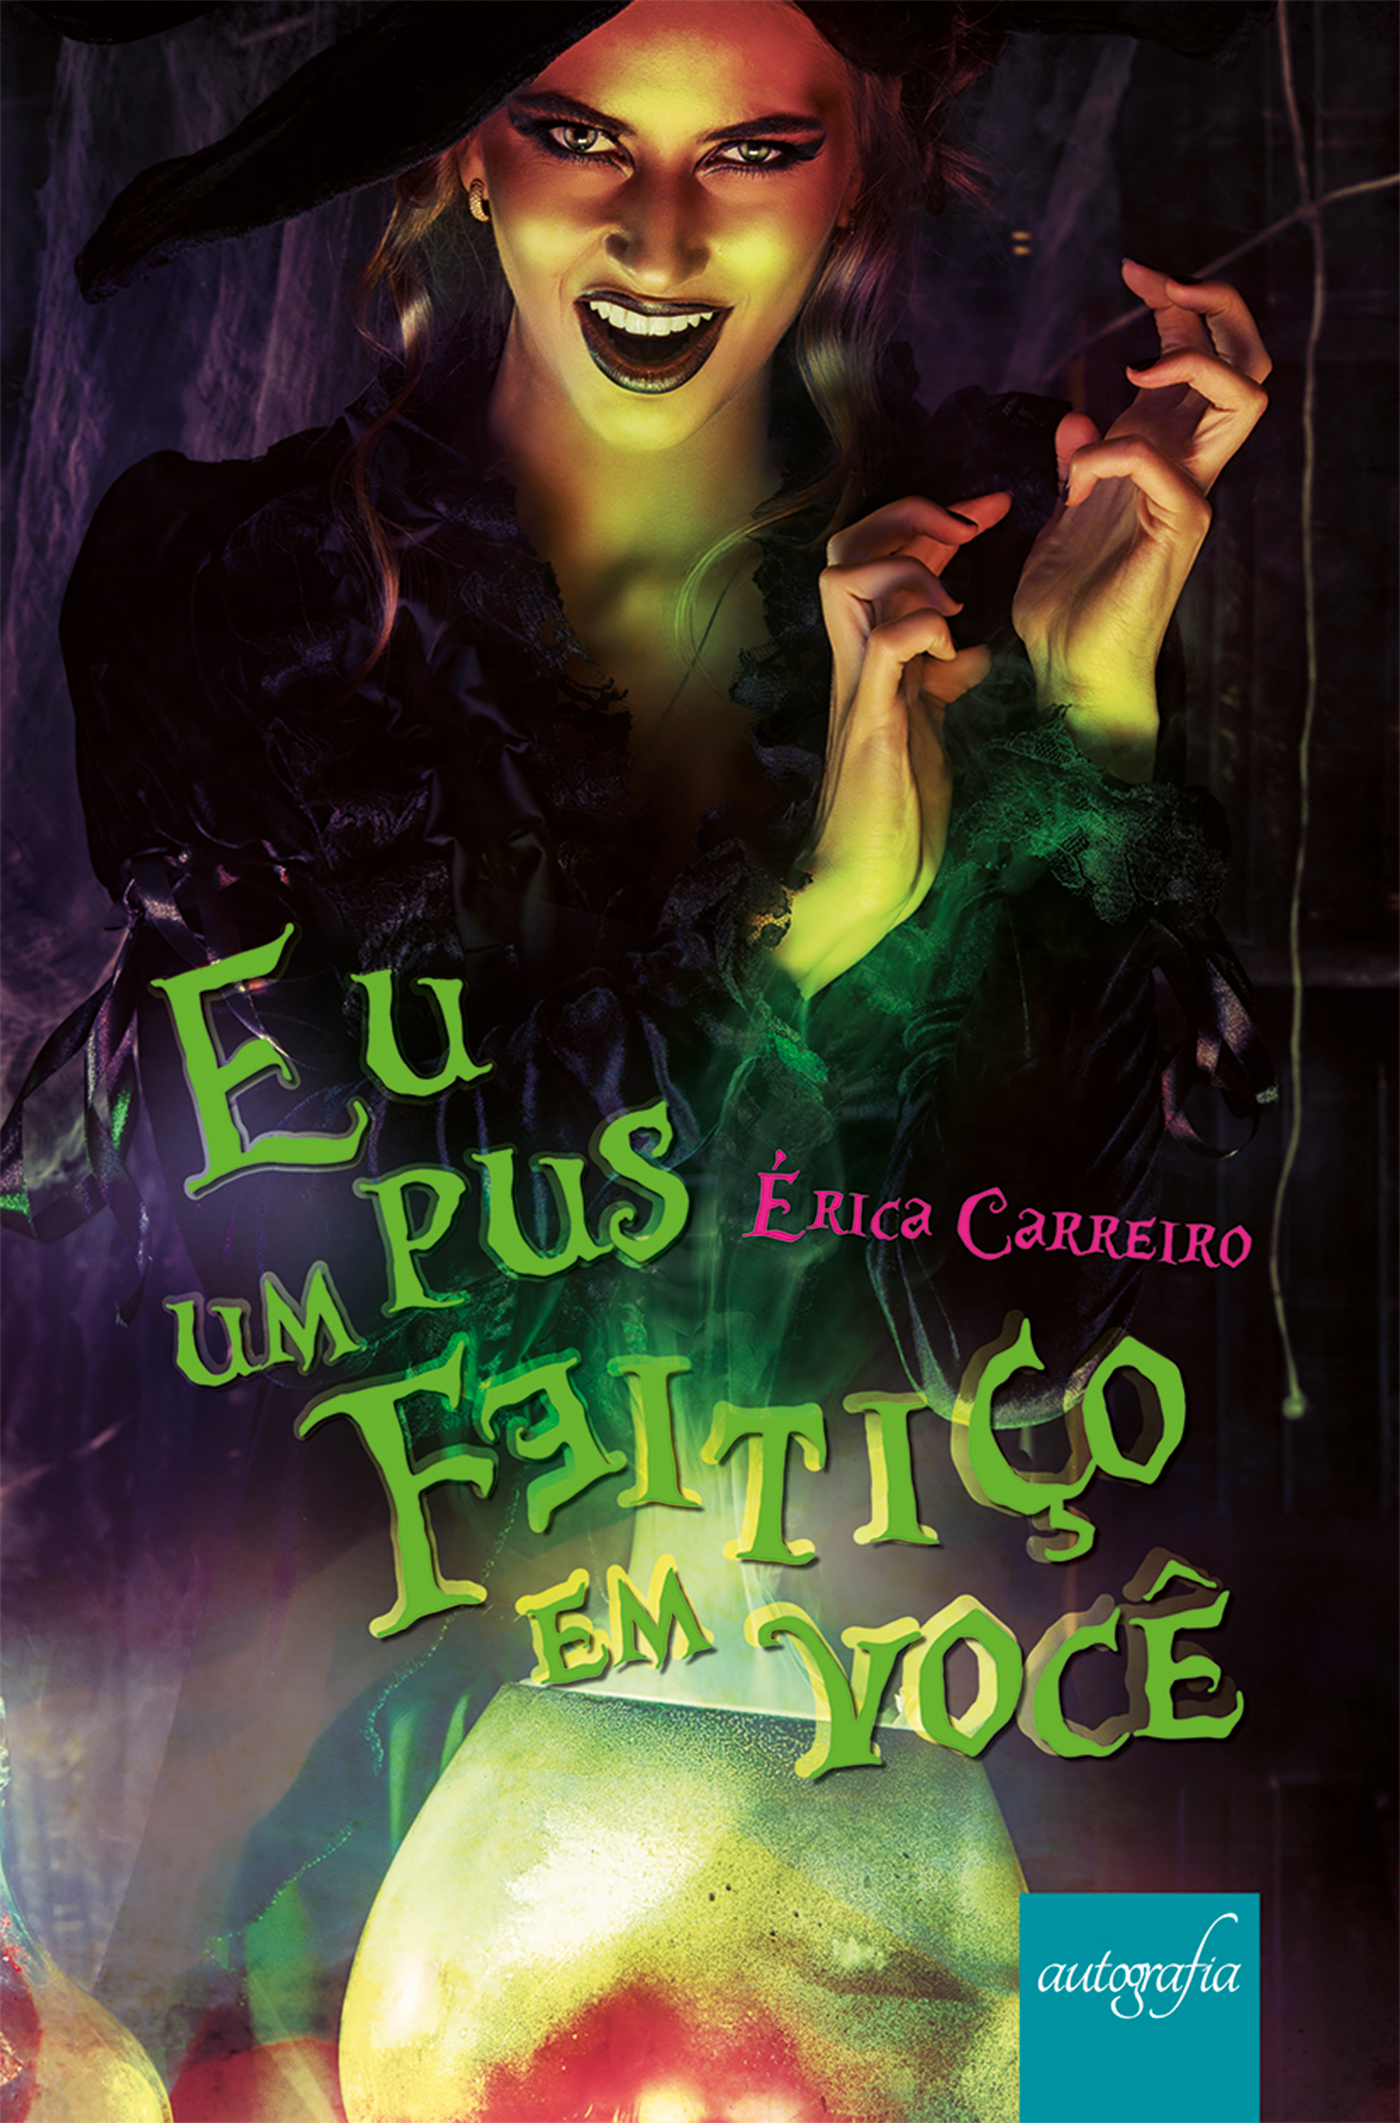 Erica Carreiro, jovem autora mineira lança seu livro de estreia “Eu pus um feitiço em você”.